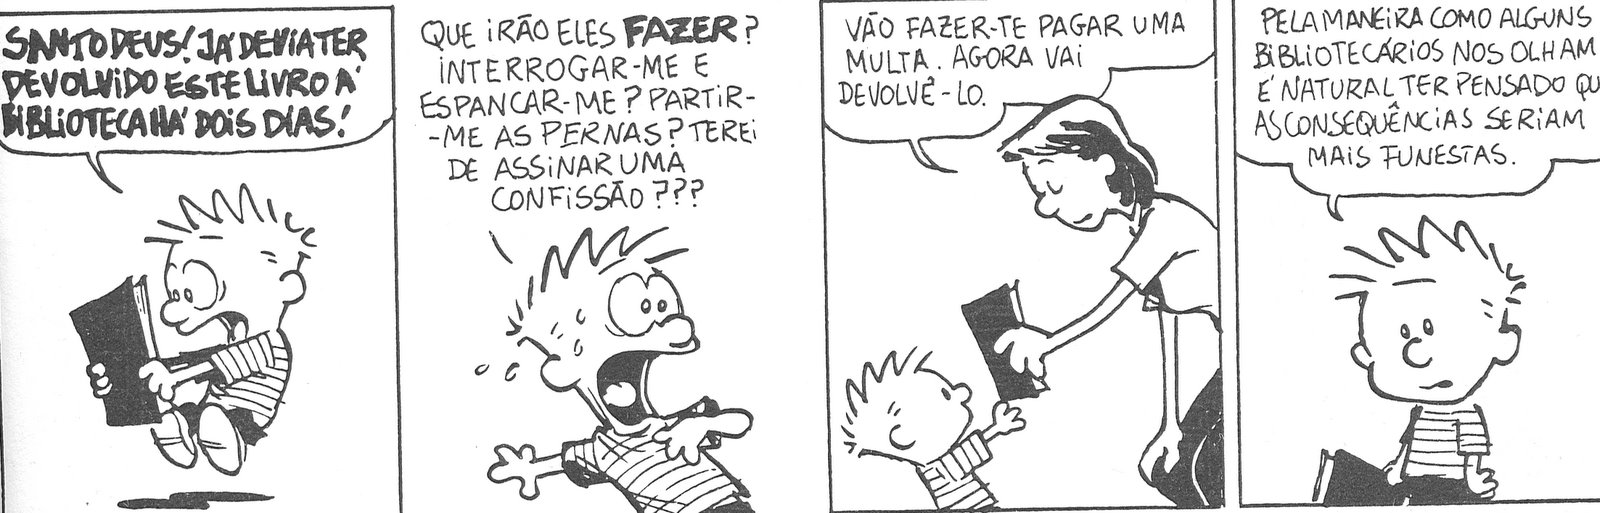 [Calvin+biblioteca.bmp]